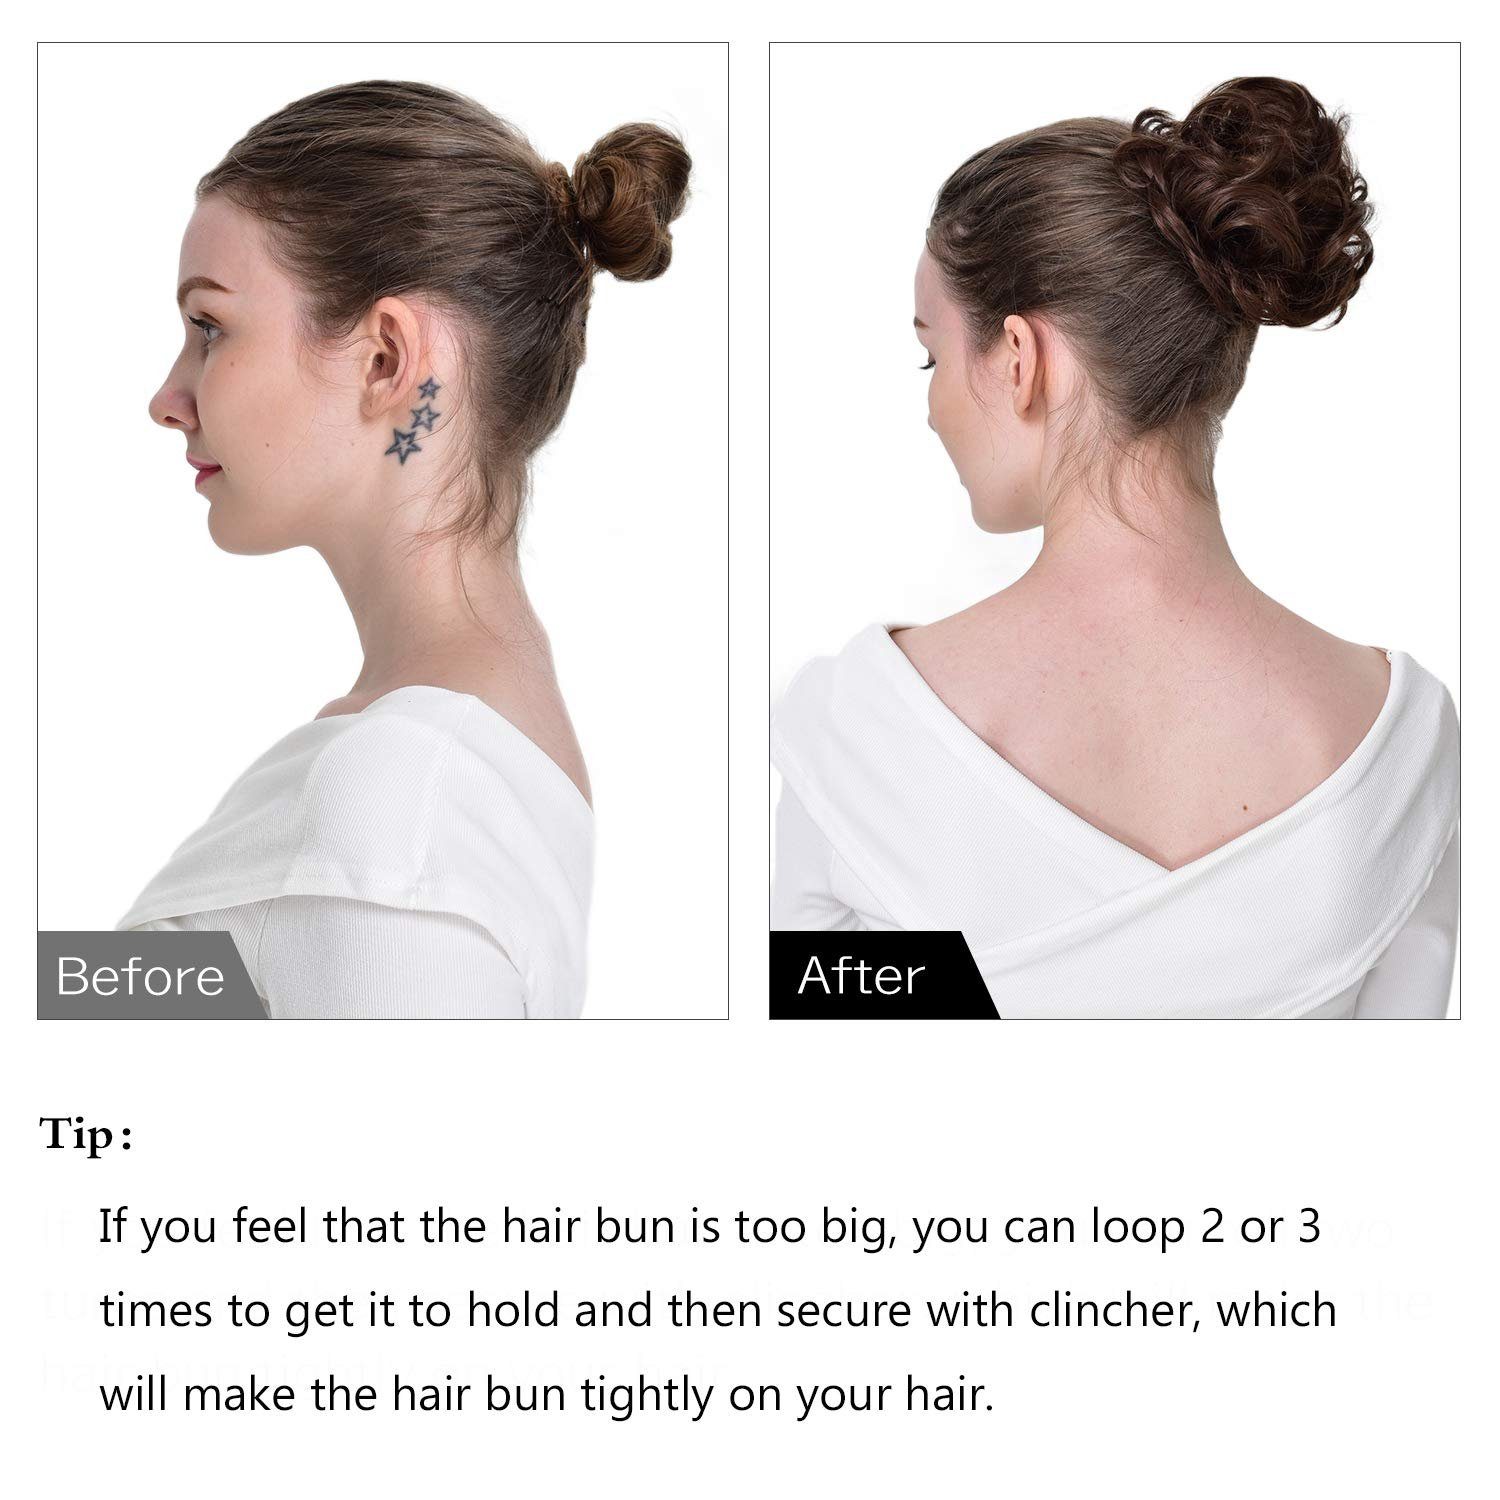 Frauen,Haarverlängerung Haarteil Black Haargummi Off für Hochsteckfrisuren, Kunsthaar-Extension SCHUTA